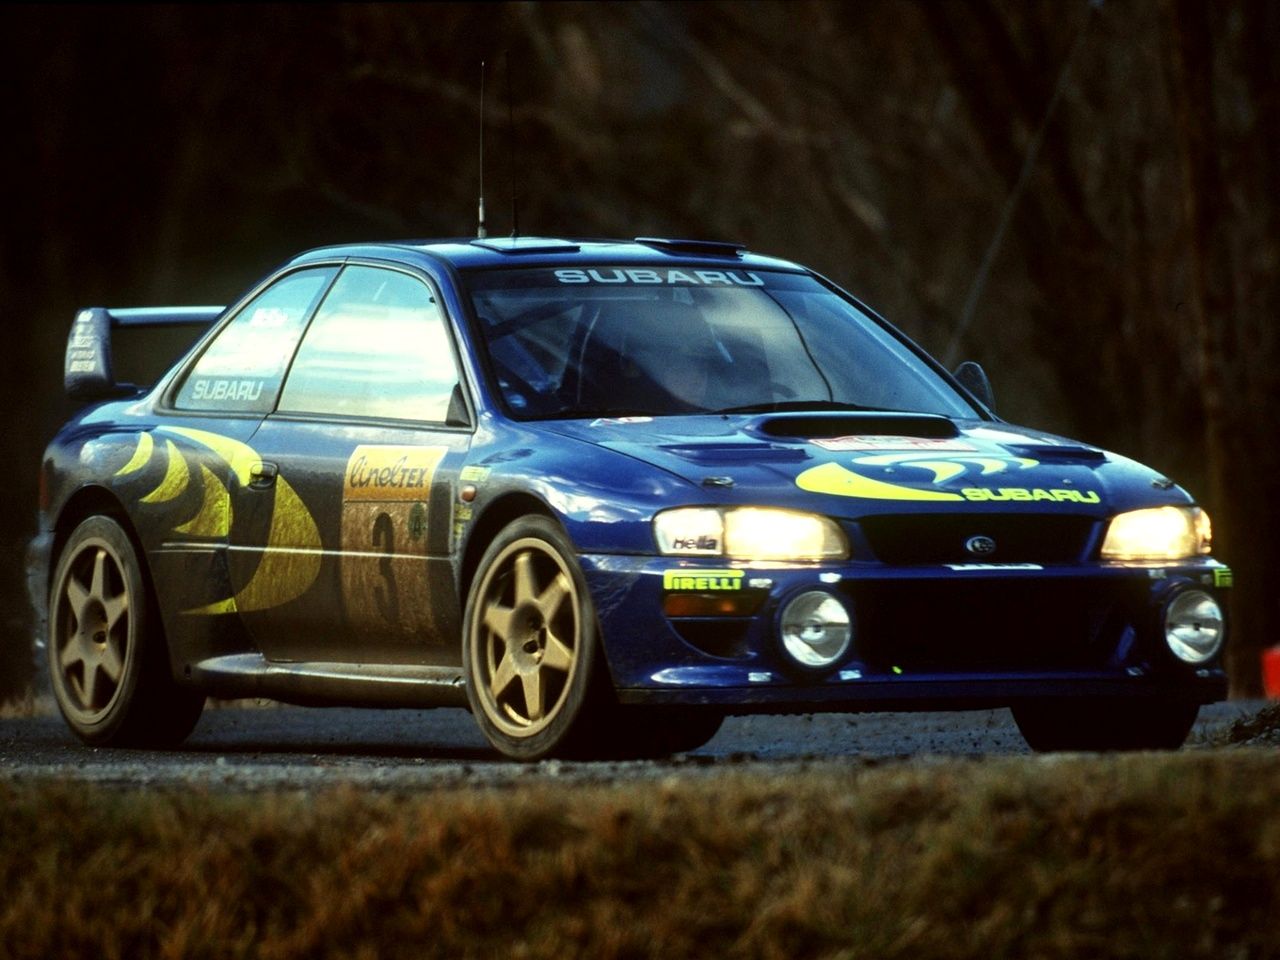 Subaru Impreza S3 WRC 97 - Blum Blum Blum Blum... 7